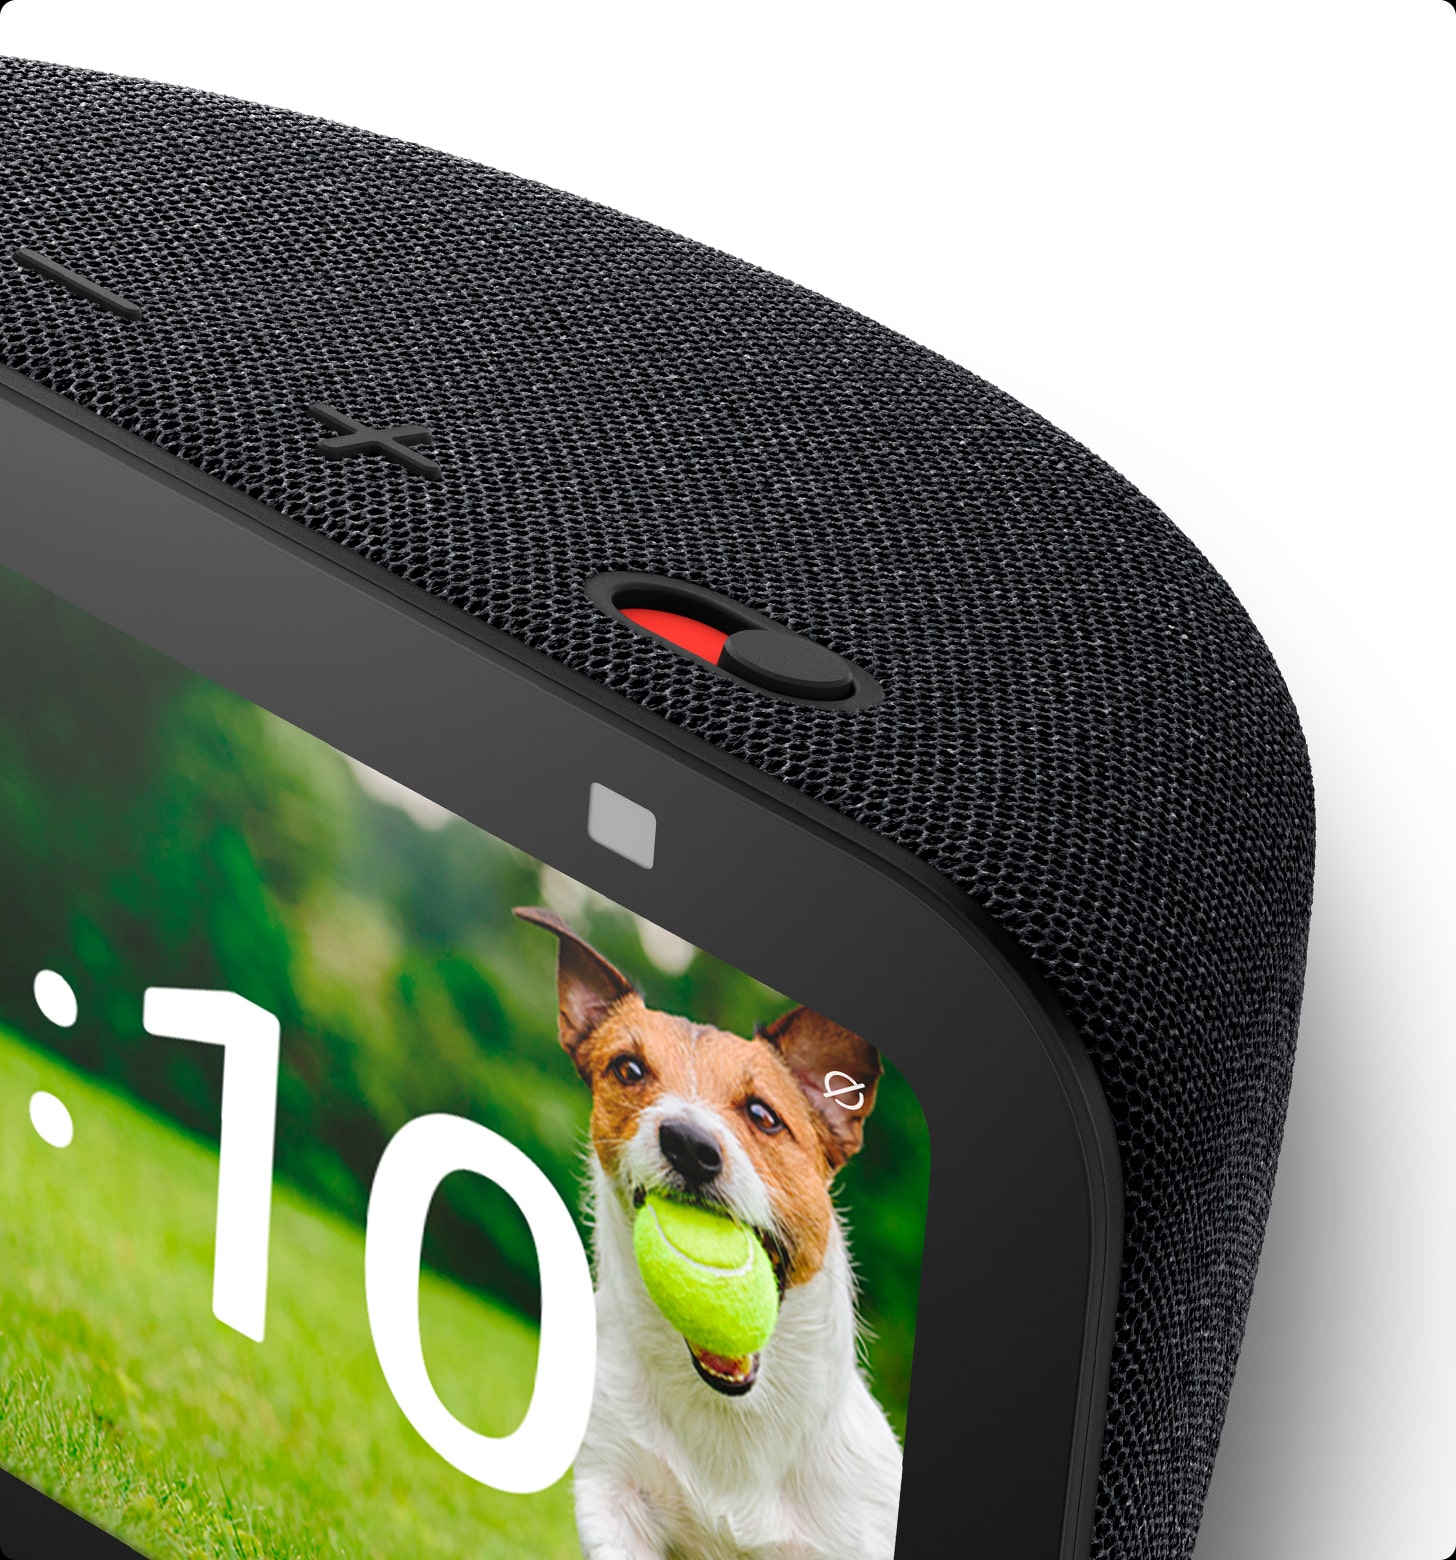 Amazon Echo Show 5, 3° Geração, Smart Speaker com Alexa, Preto